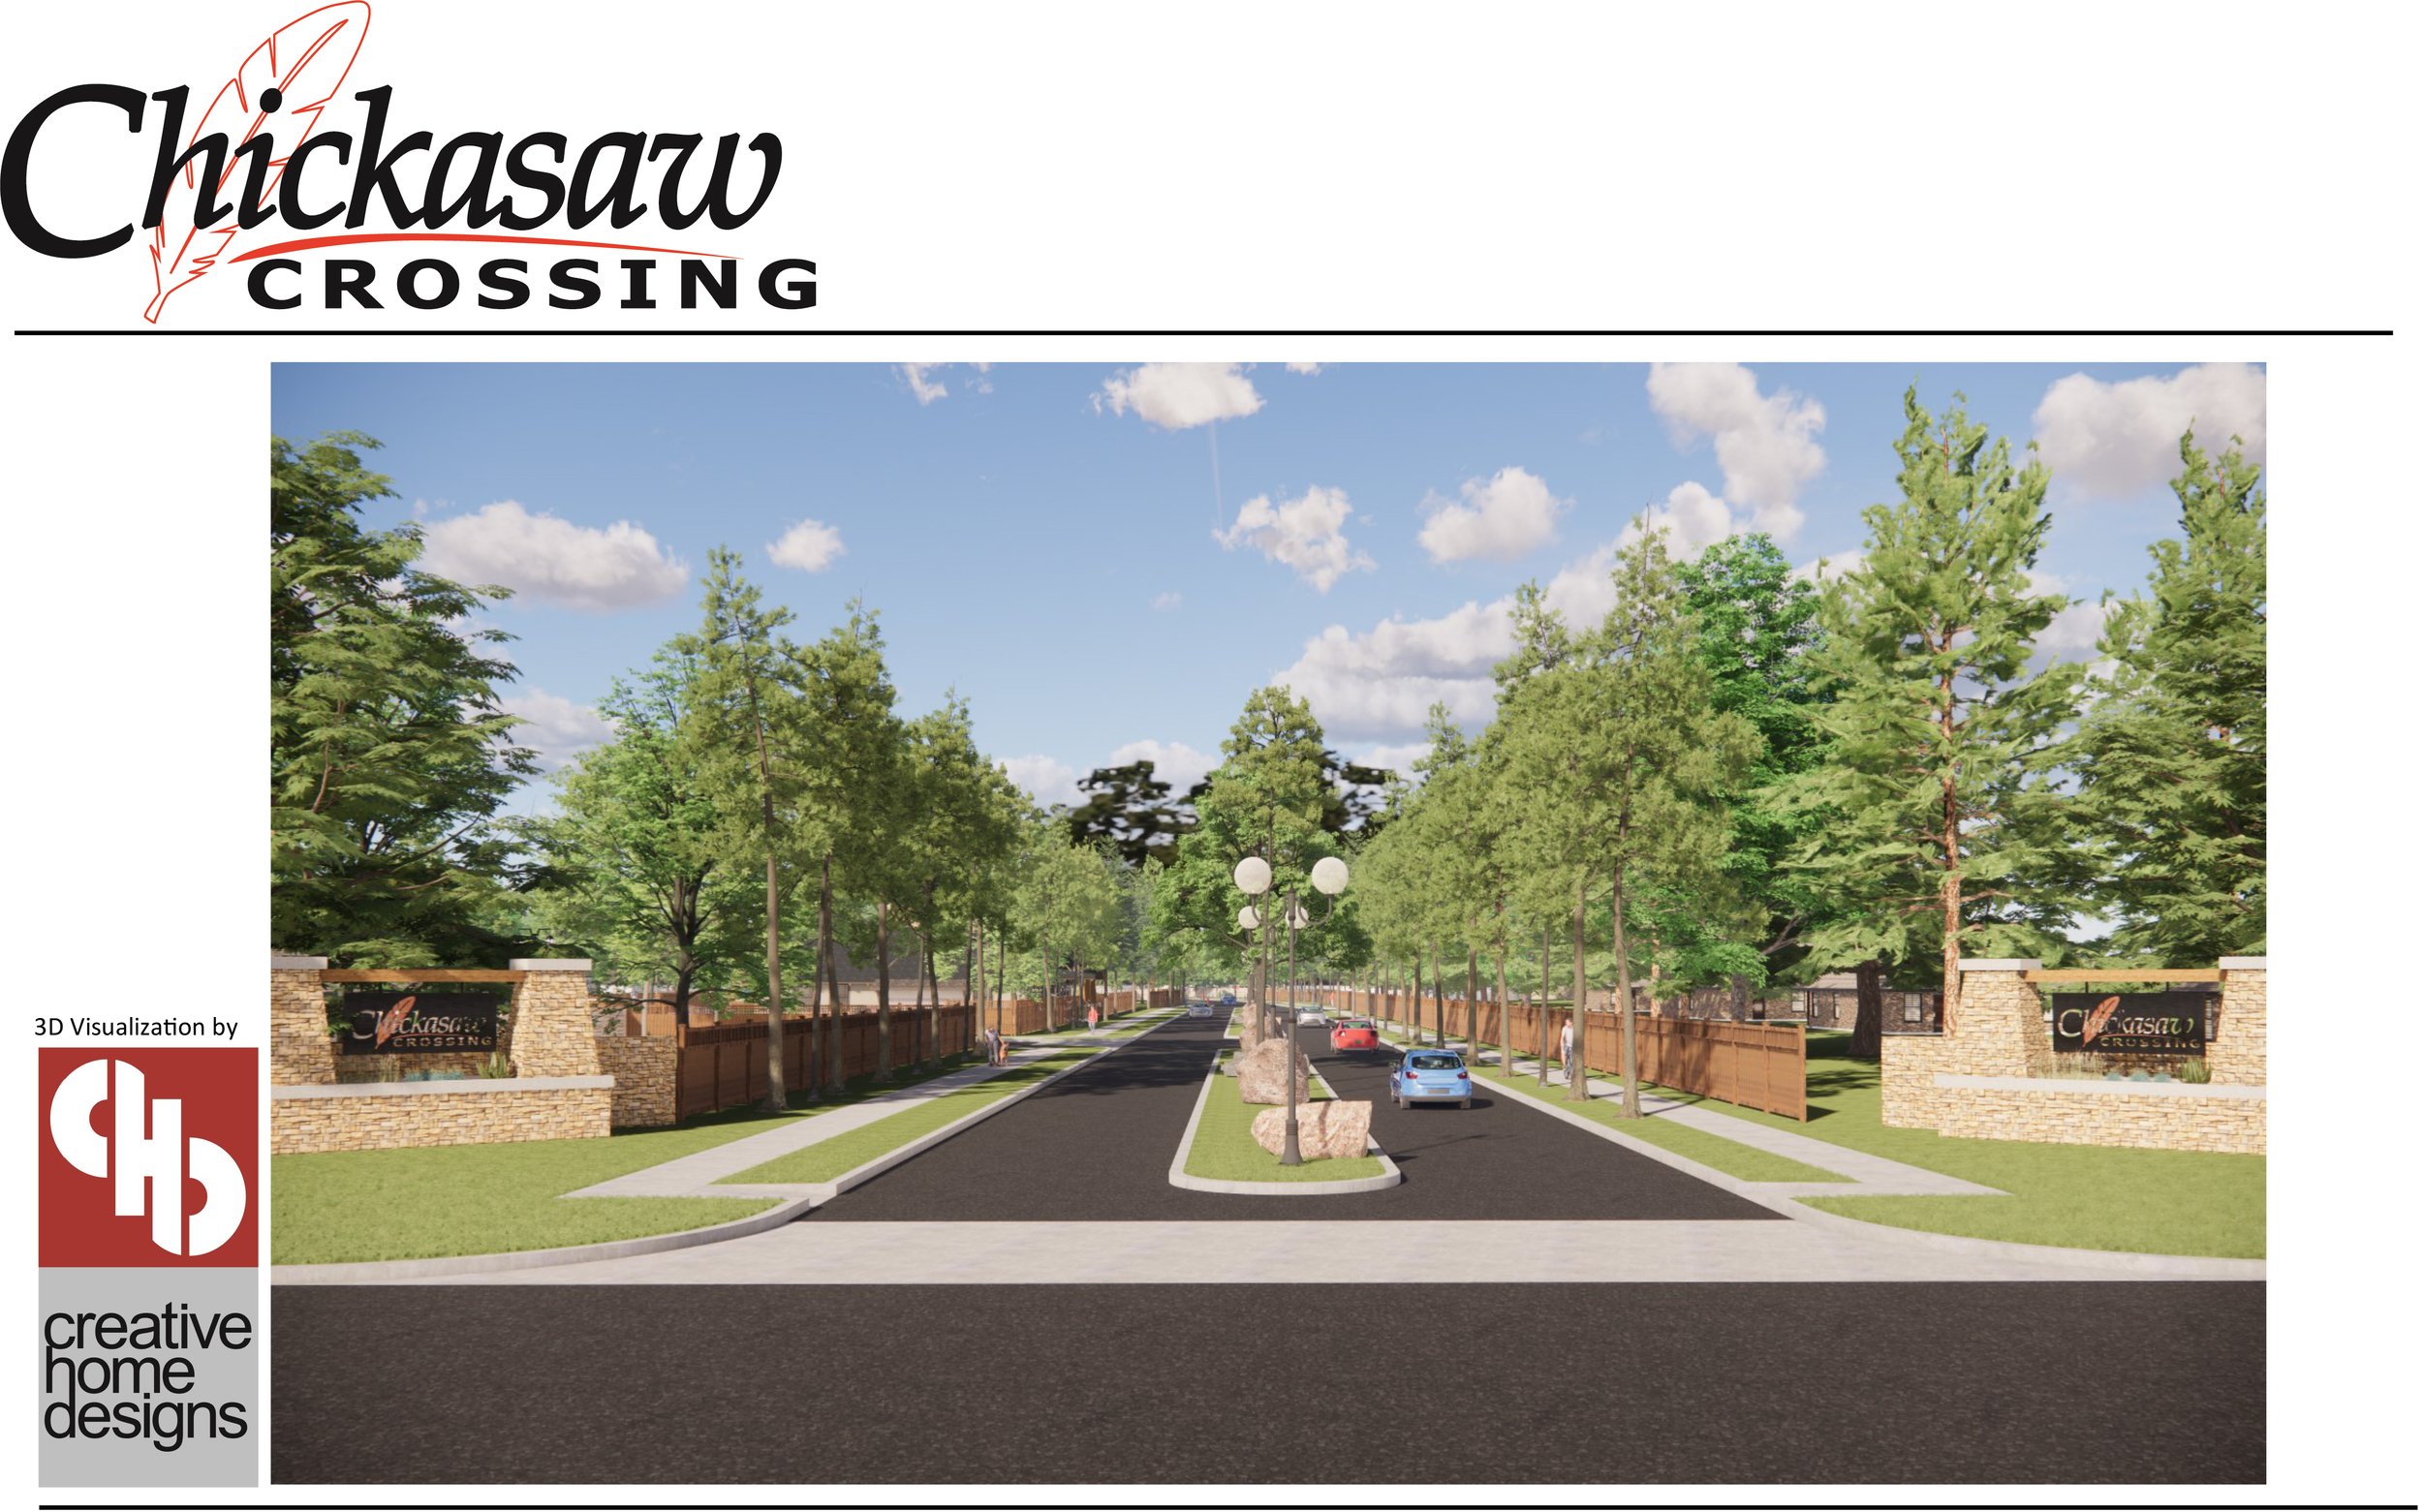 Chickasaw-Crossing-Presentation-Packet-1.jpg